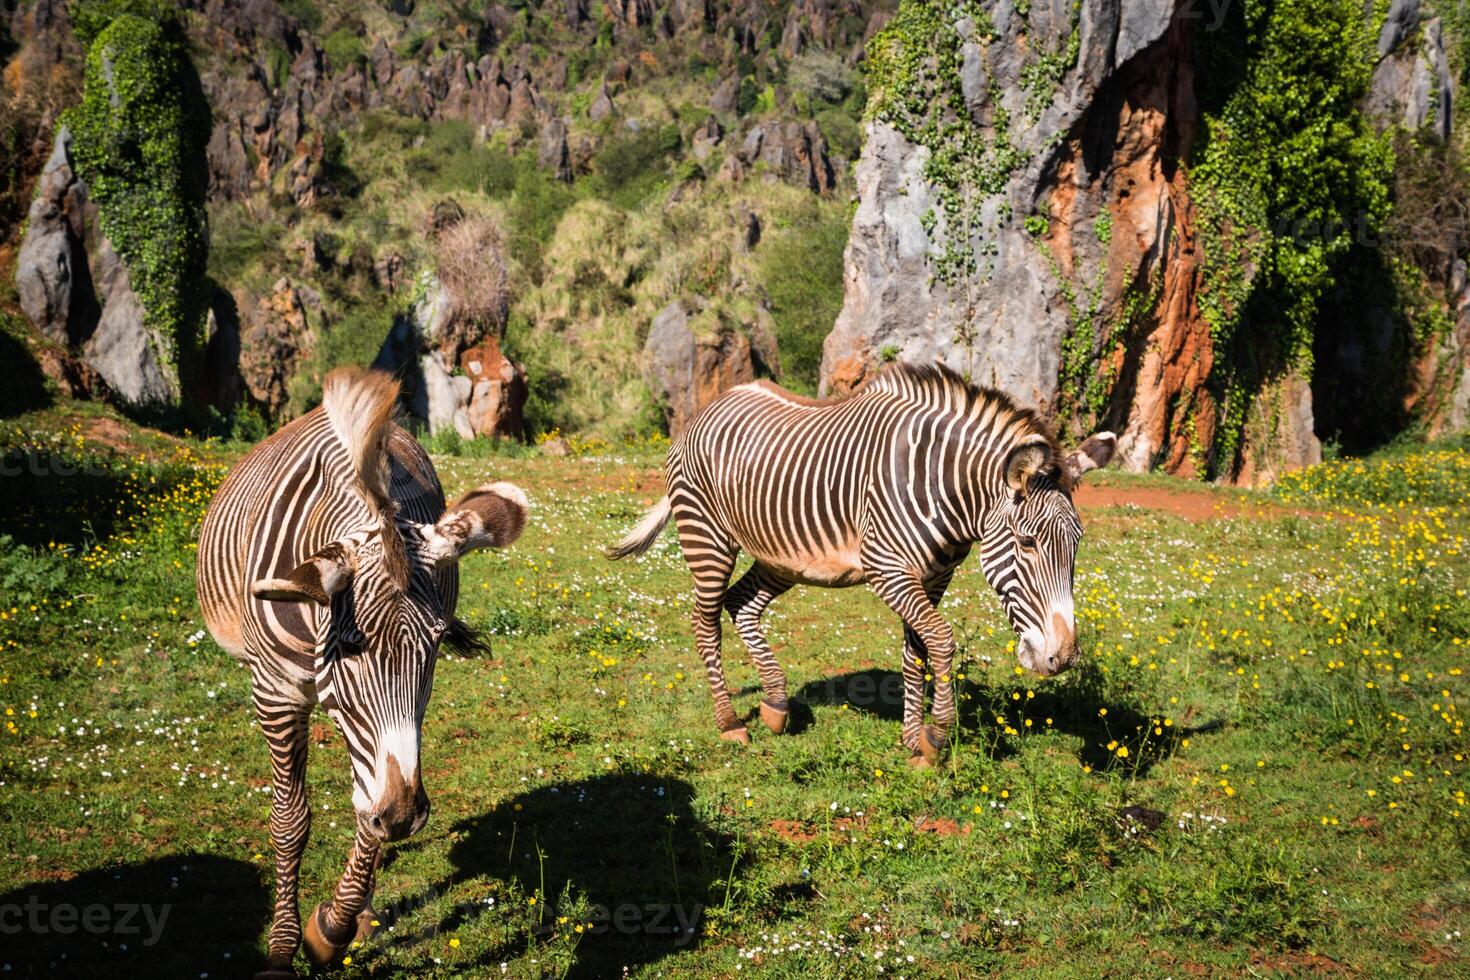 de grevy s zebra equus Grevyi, soms bekend net zo de keizerlijk zebra, is de grootste soorten van zebra. het is gevonden in de Masai mara reserveren in Kenia Afrika foto